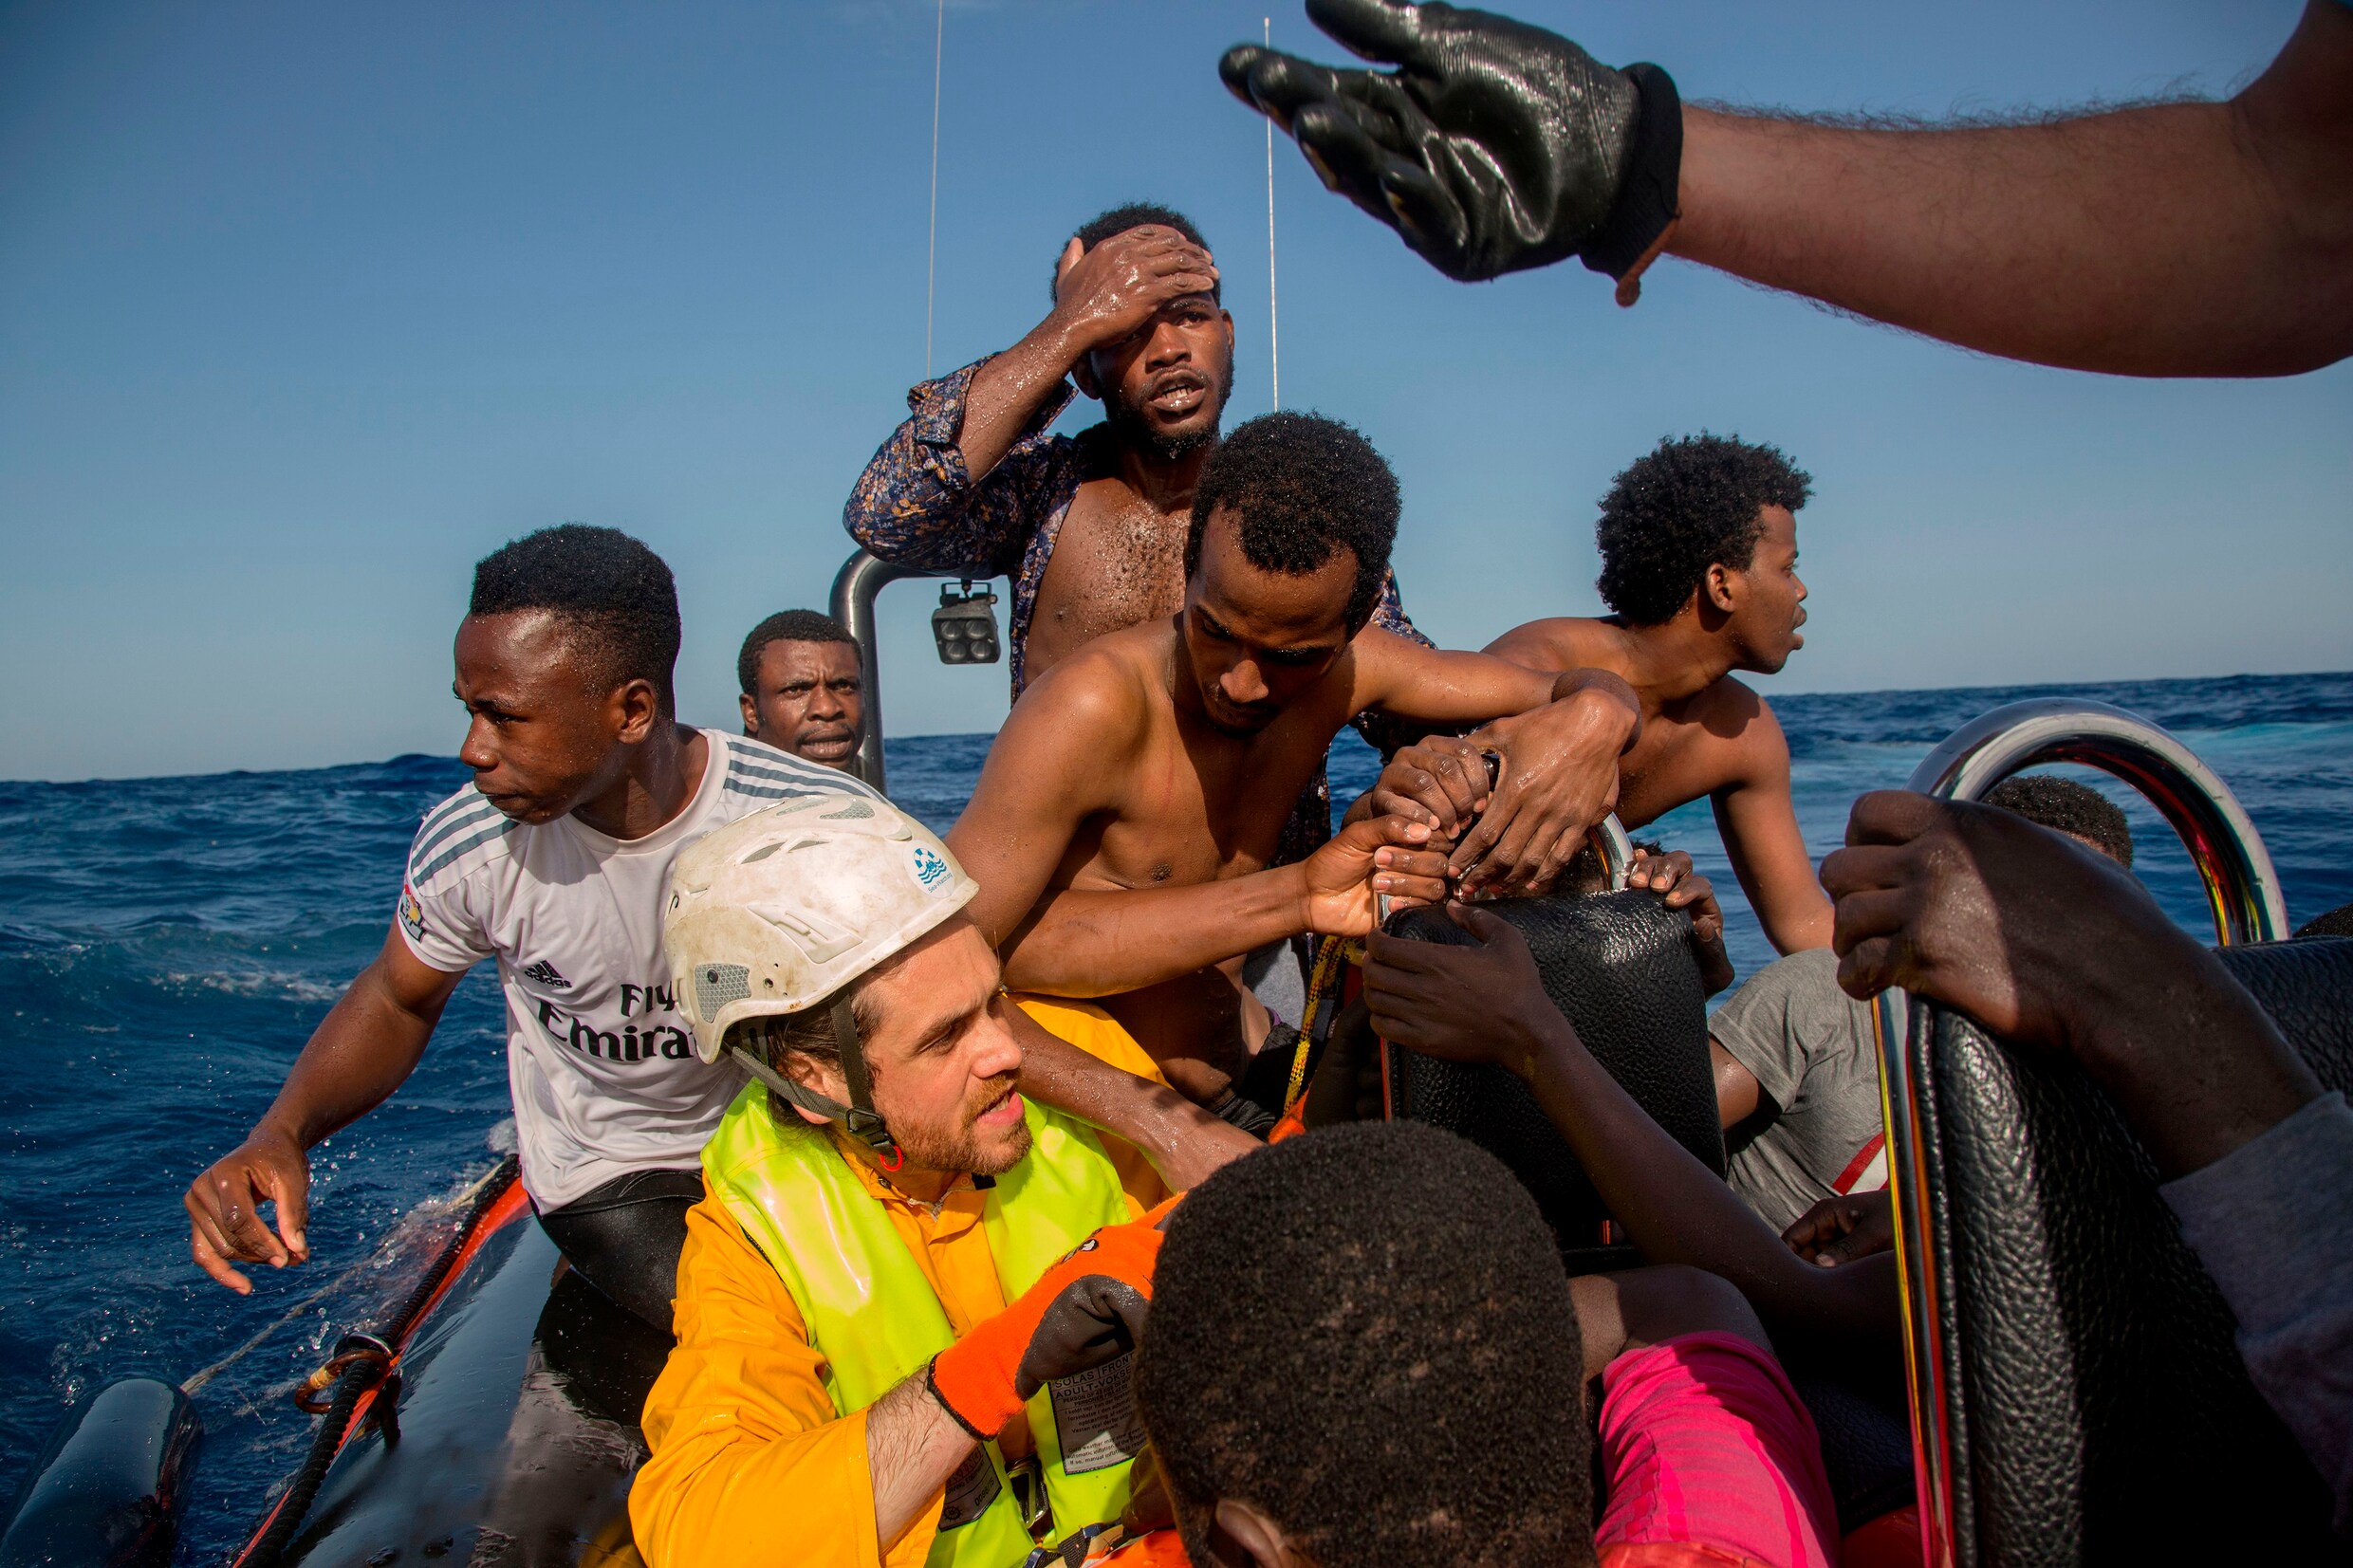 1500 migranten gered op Middellandse Zee in drie dagen tijd - vrouw zit dood in bootje